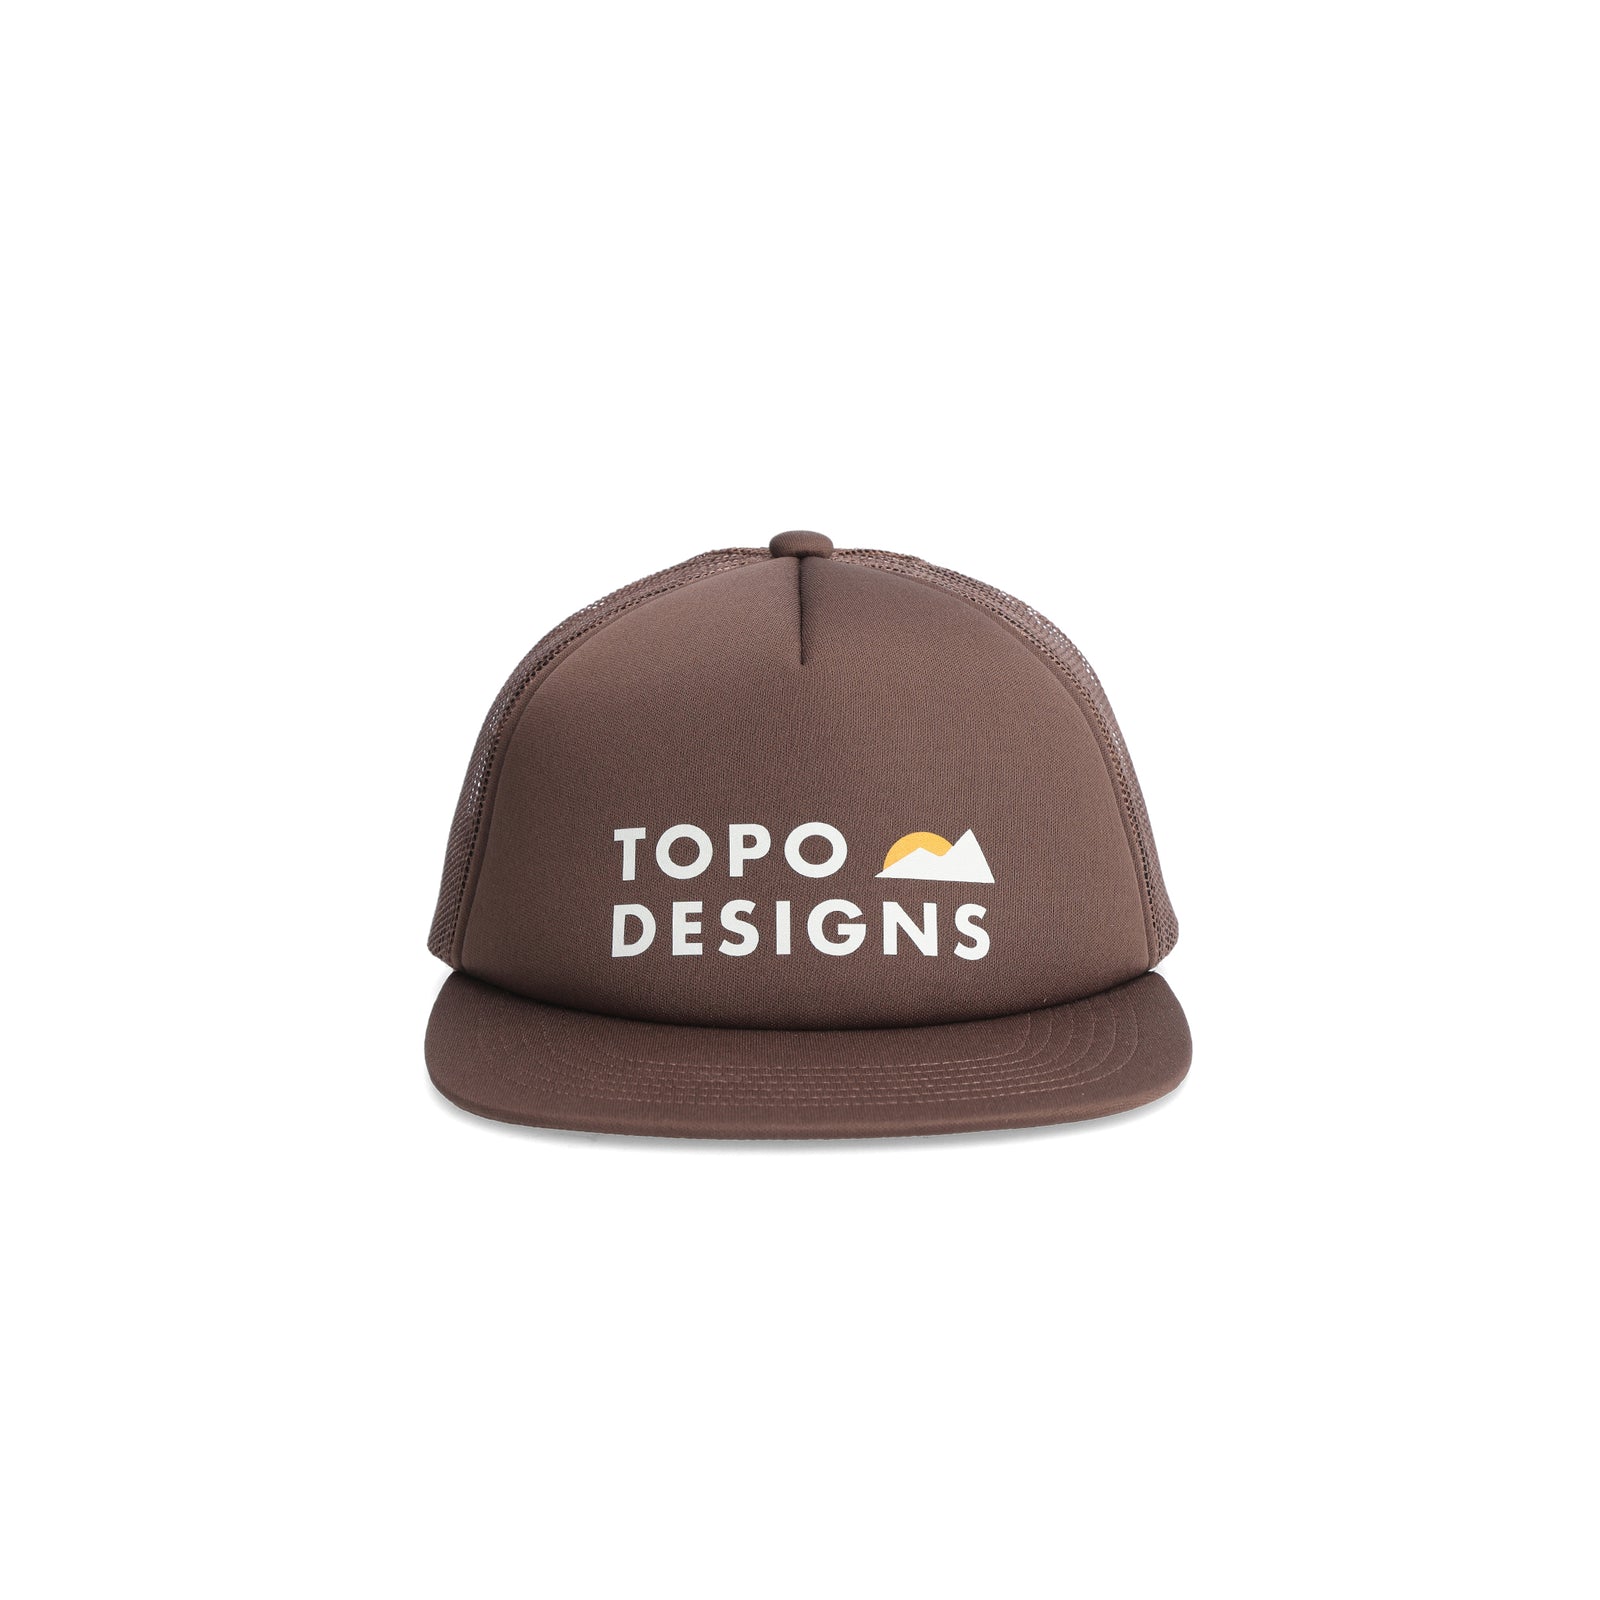 Topo Designs Mountain Waves Foam Trucker Hat in "Desert Palm"